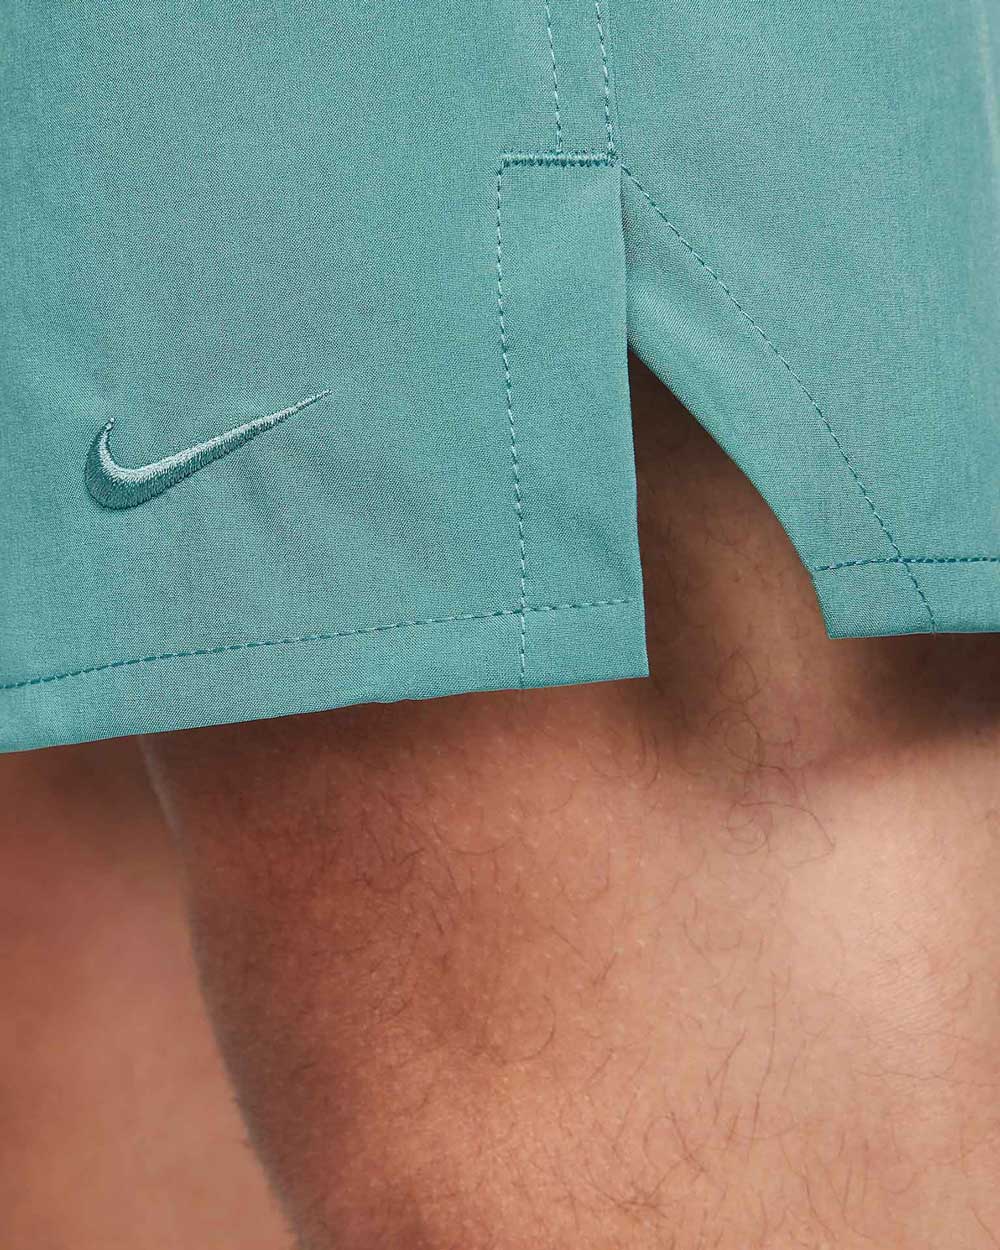 Nike Dri-FIT Unlimited Shorts